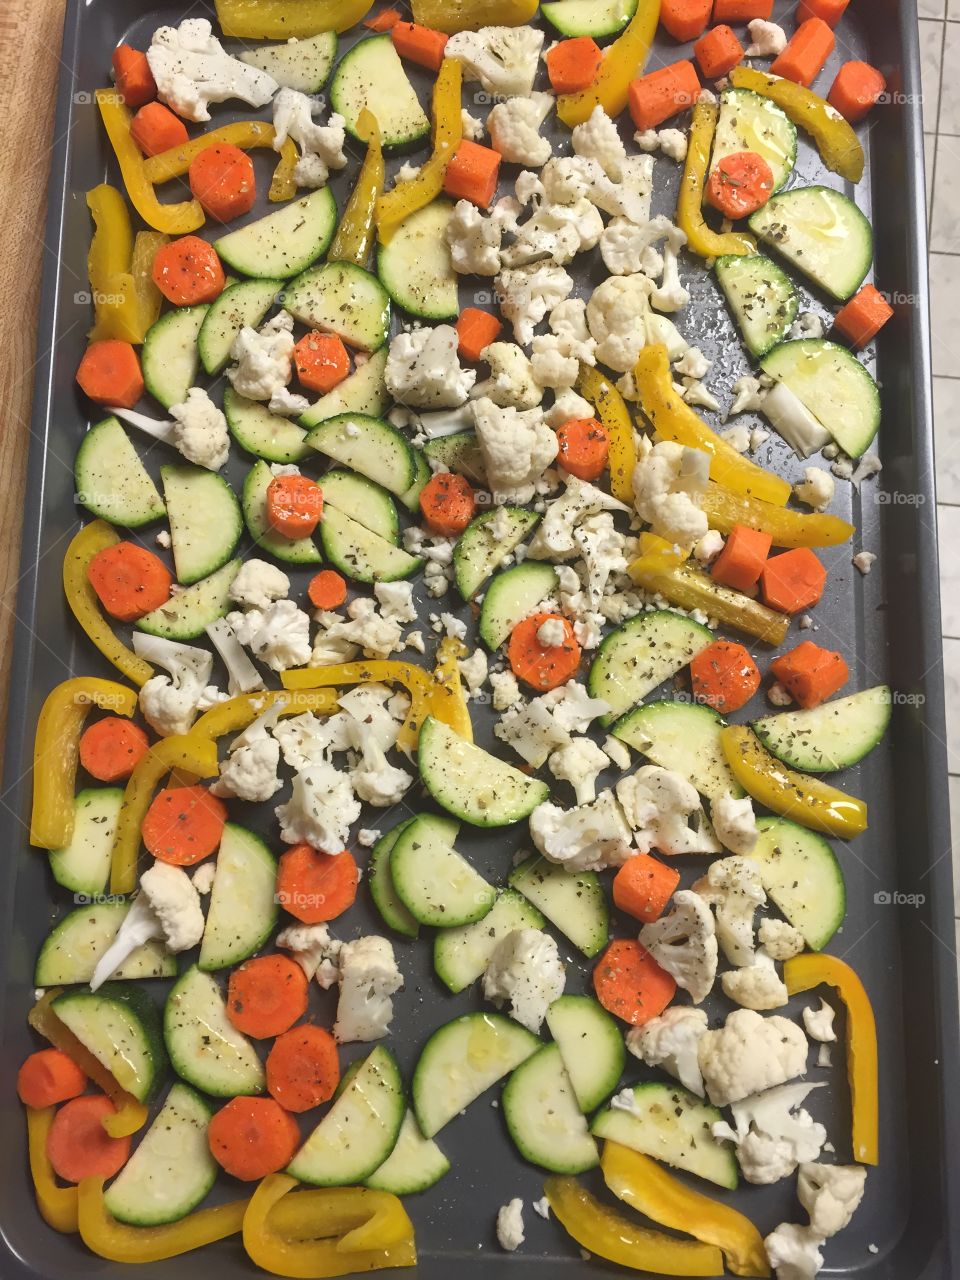 Seasoned vegetables for roasting